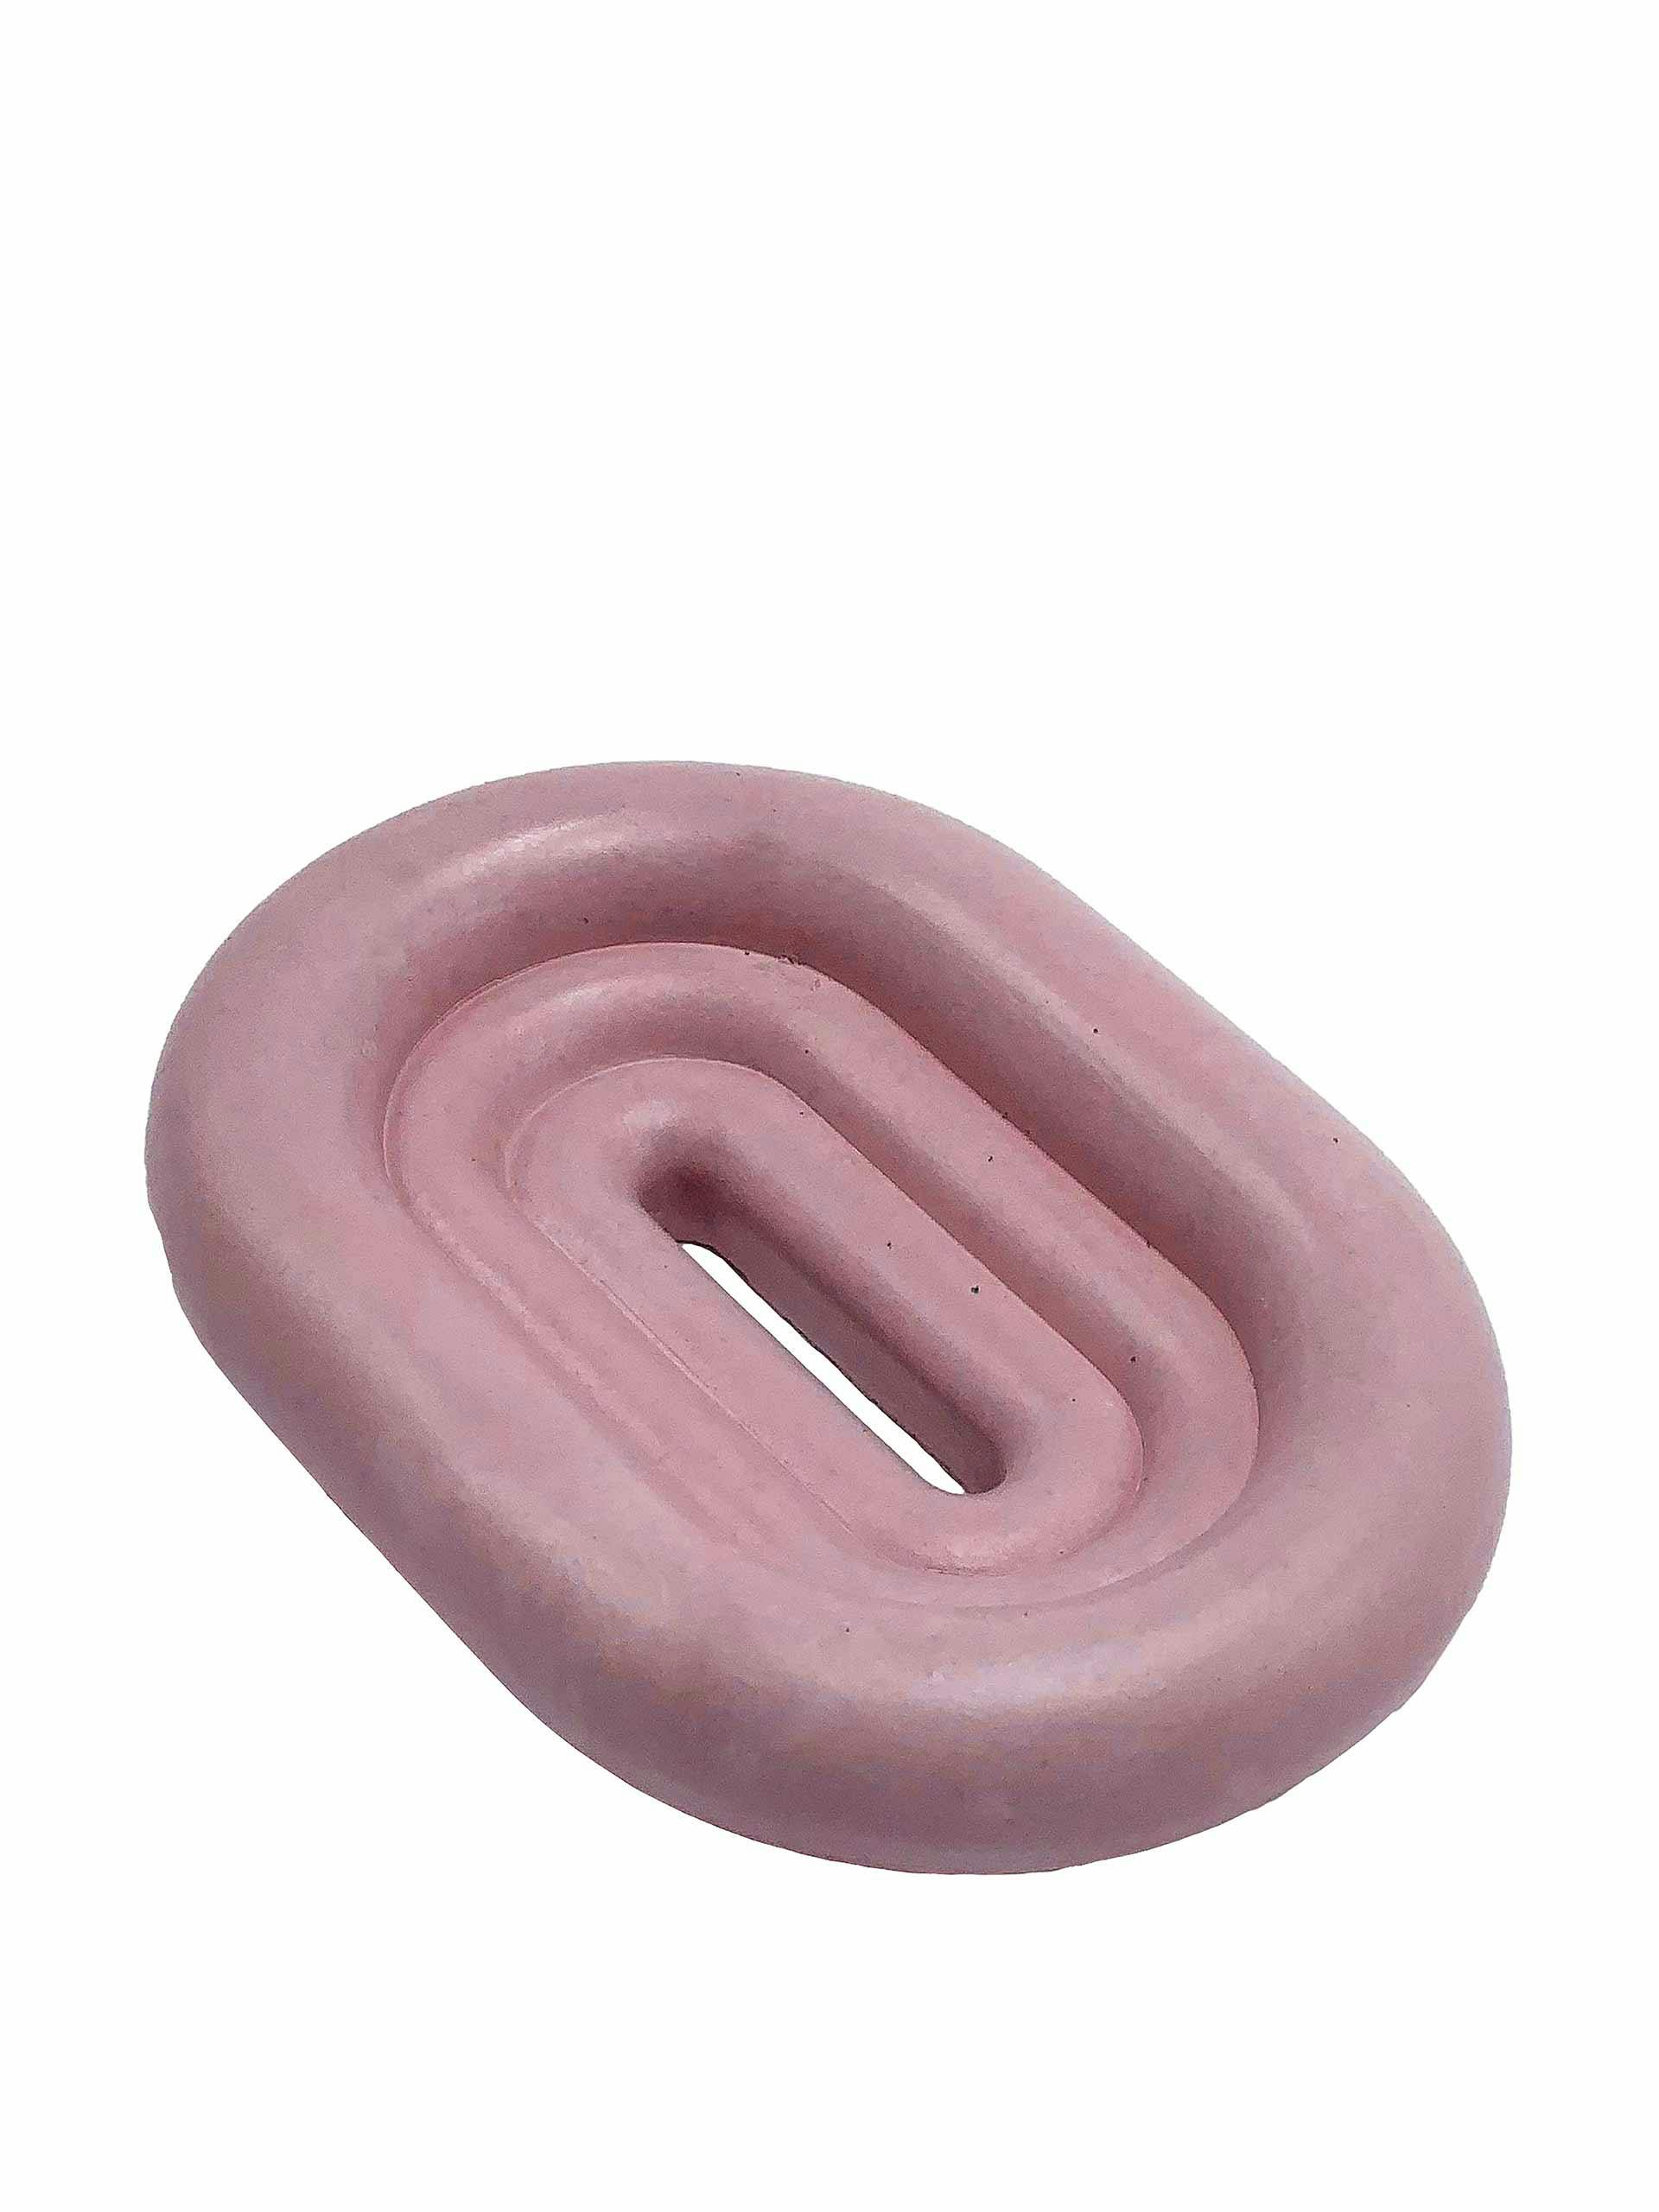 Pink concrete soap dish